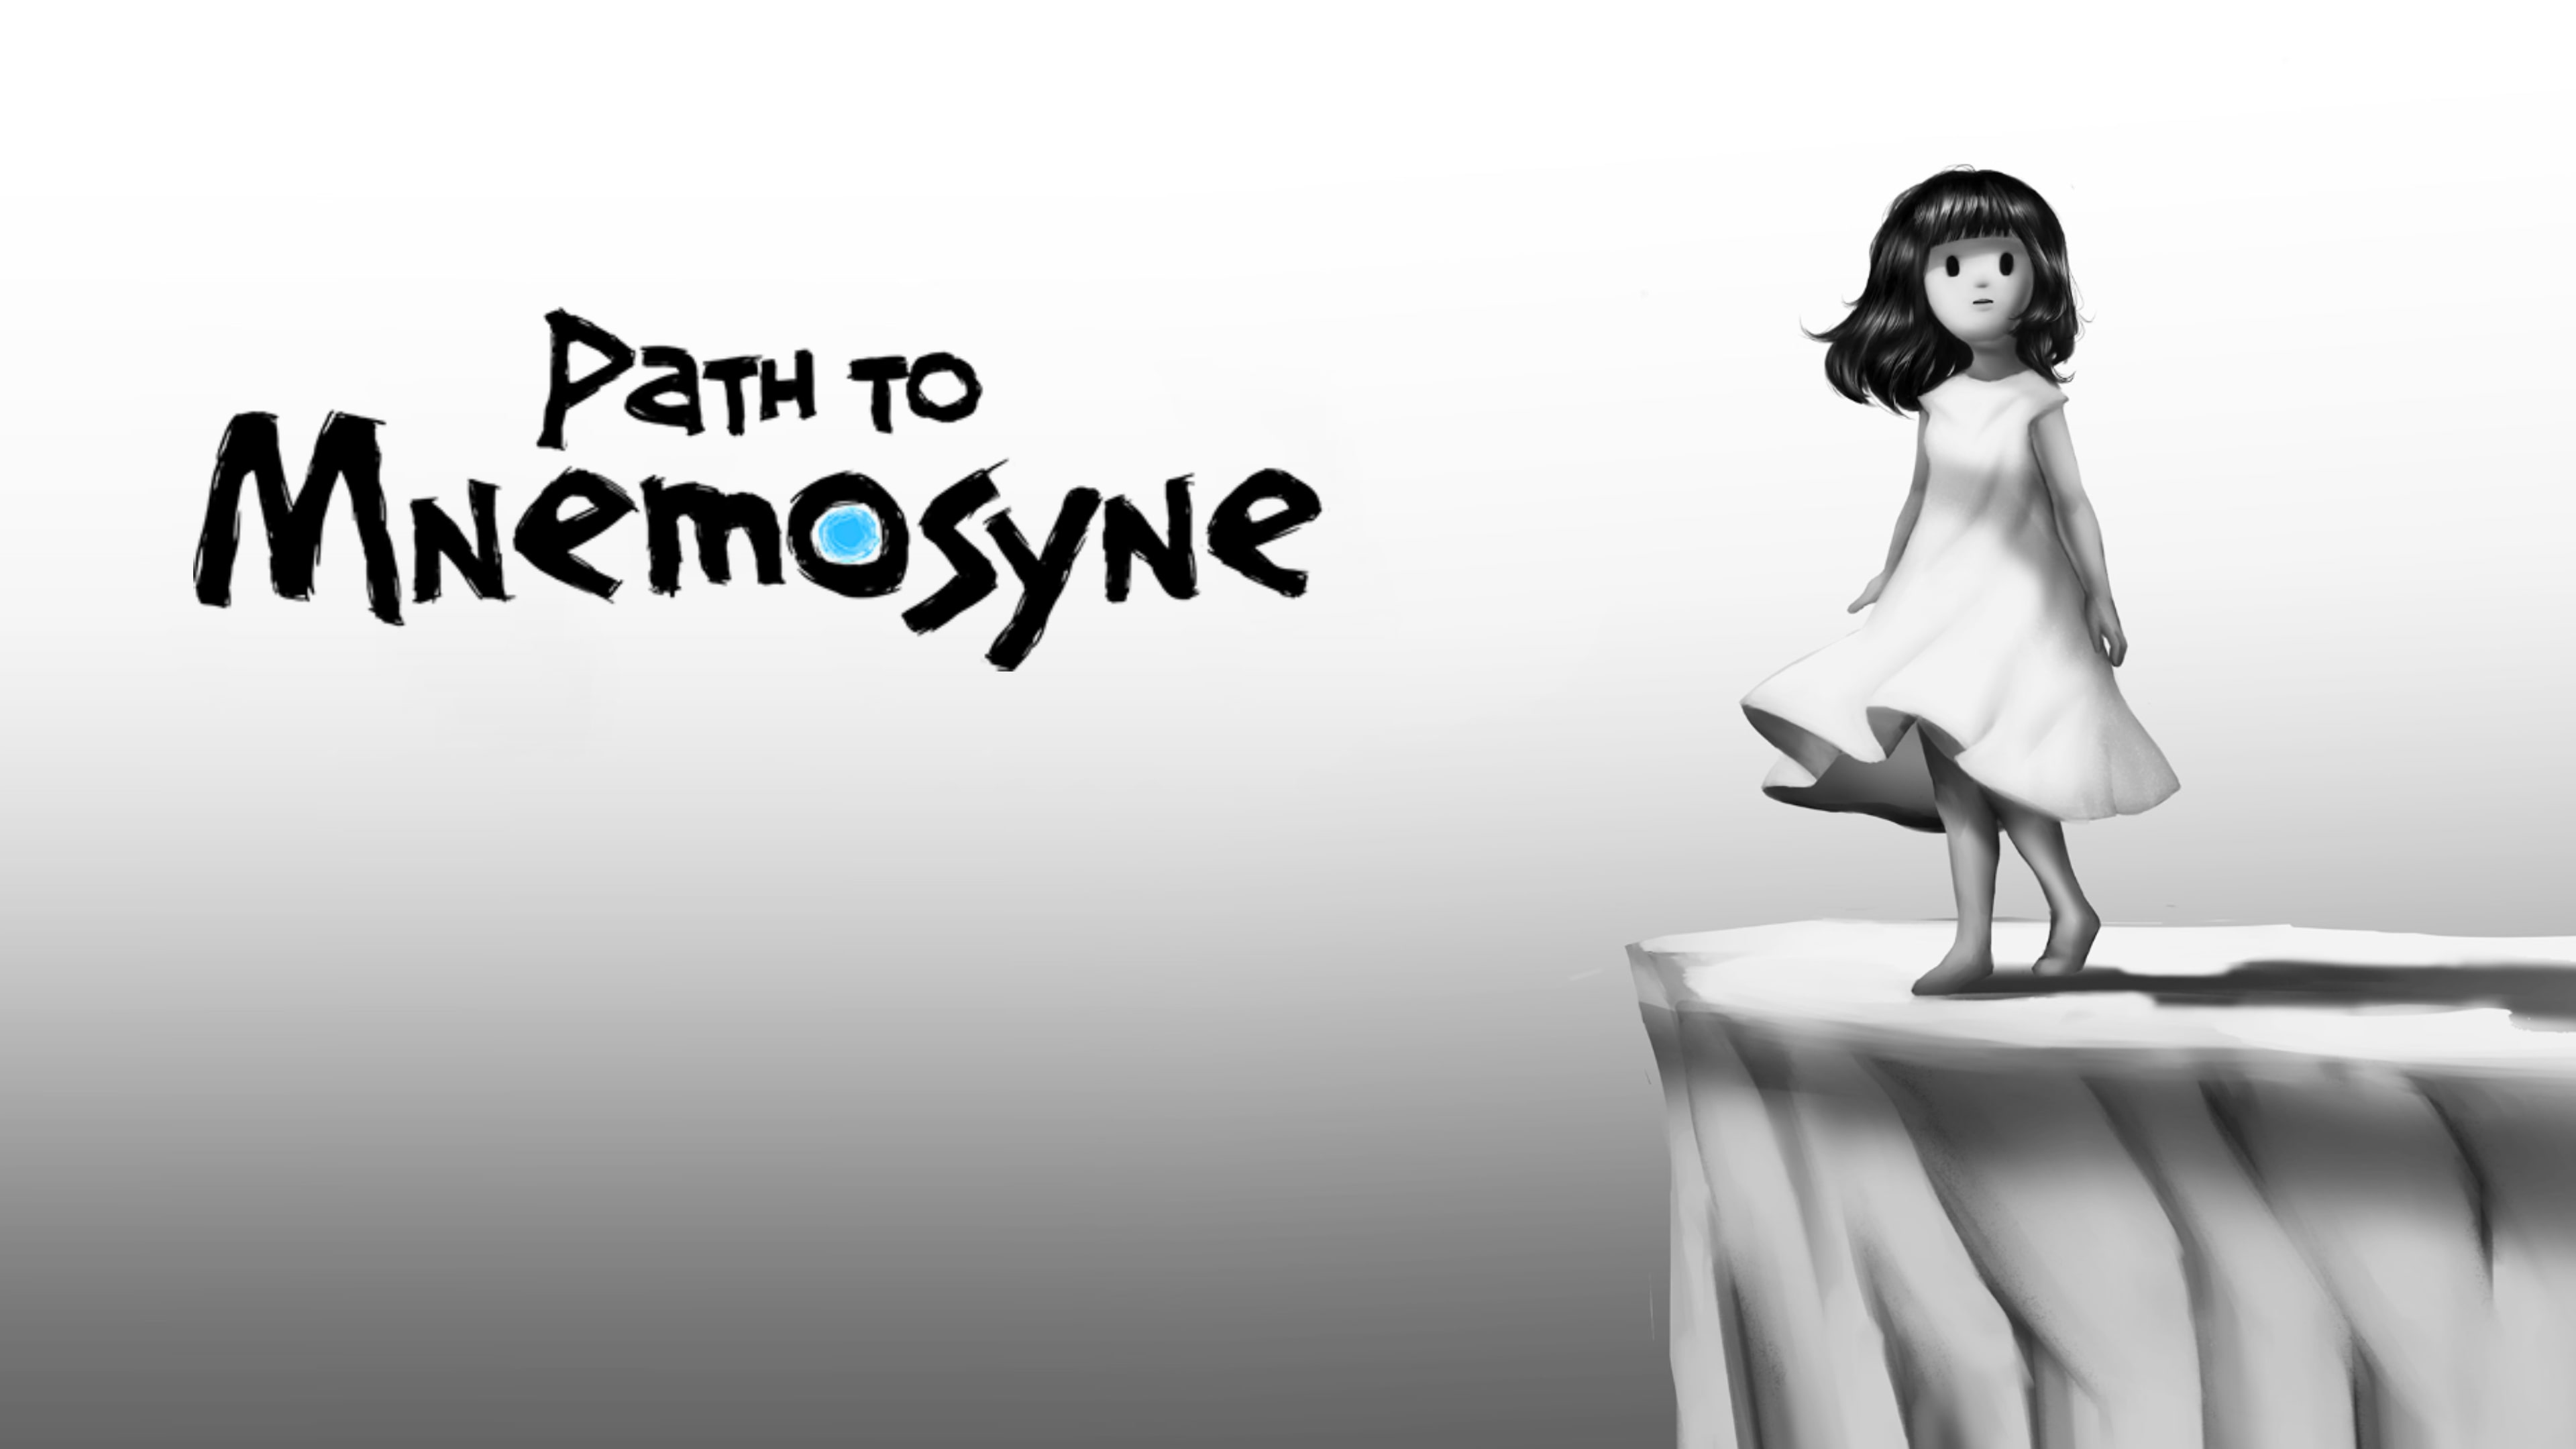 PathToMnemosyne Game+Theme